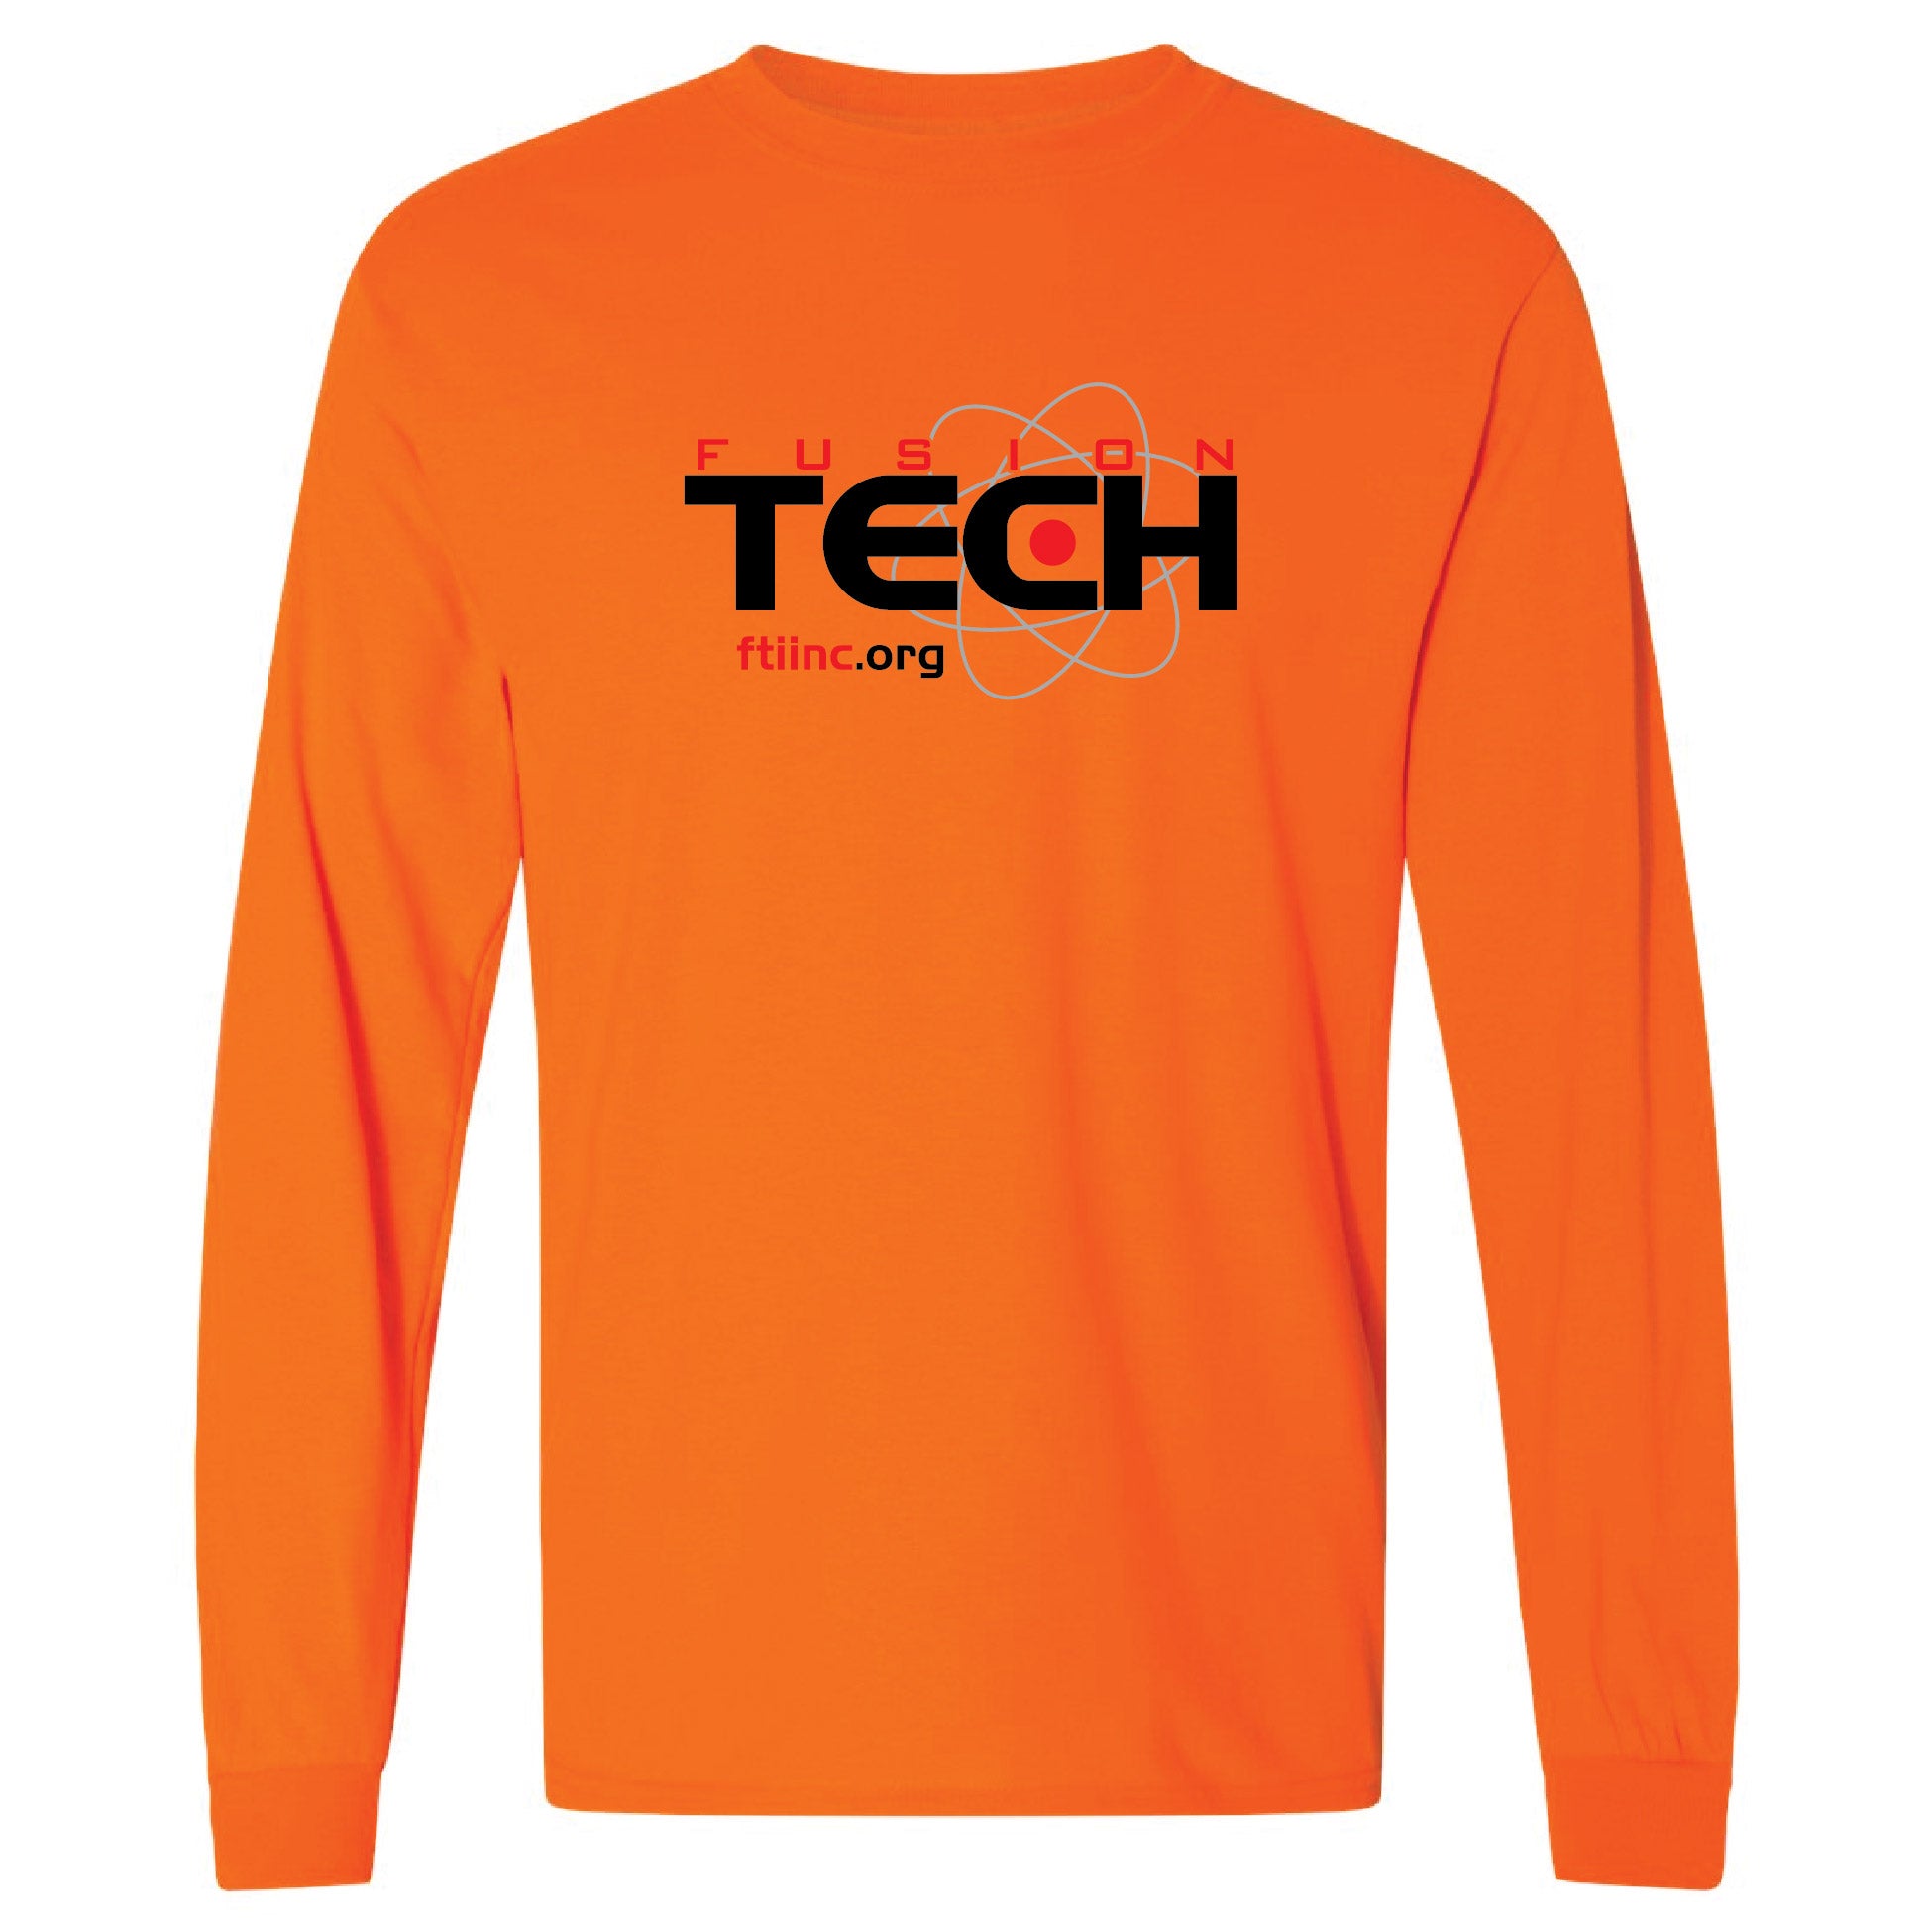 Fusion Tech Screenprinted Longsleeve T-Shirt